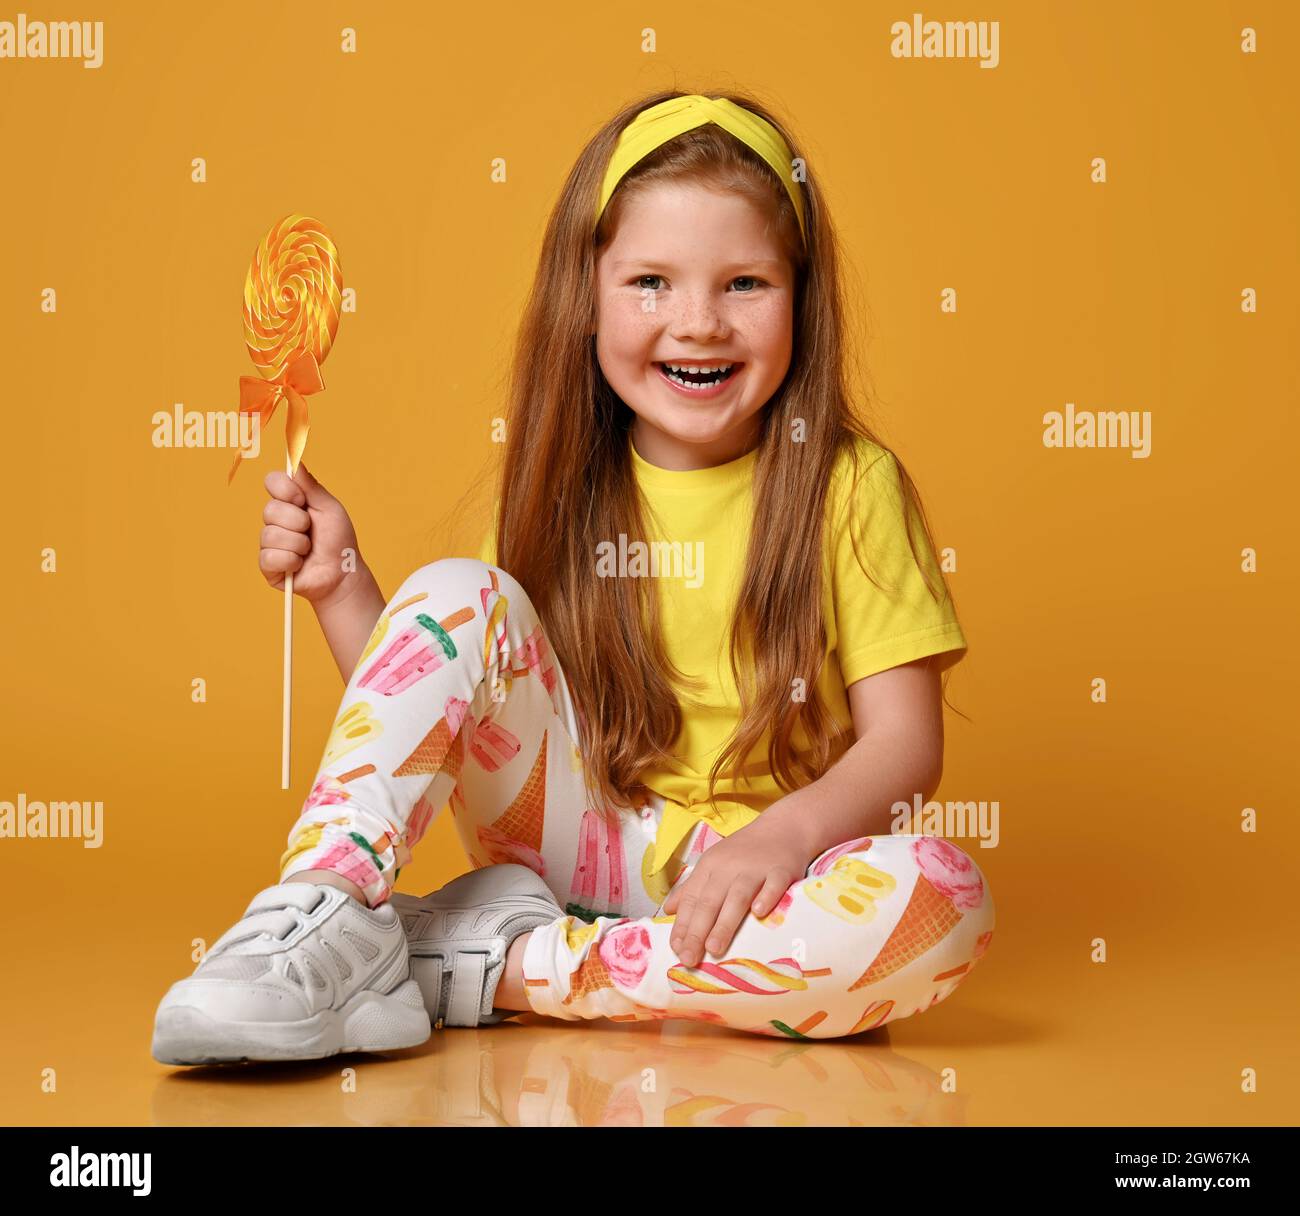 Carina bambina in t-shirt gialla e leggings colorati si siede sul pavimento  tenendo grandi lecca in mano e sorrisi Foto stock - Alamy